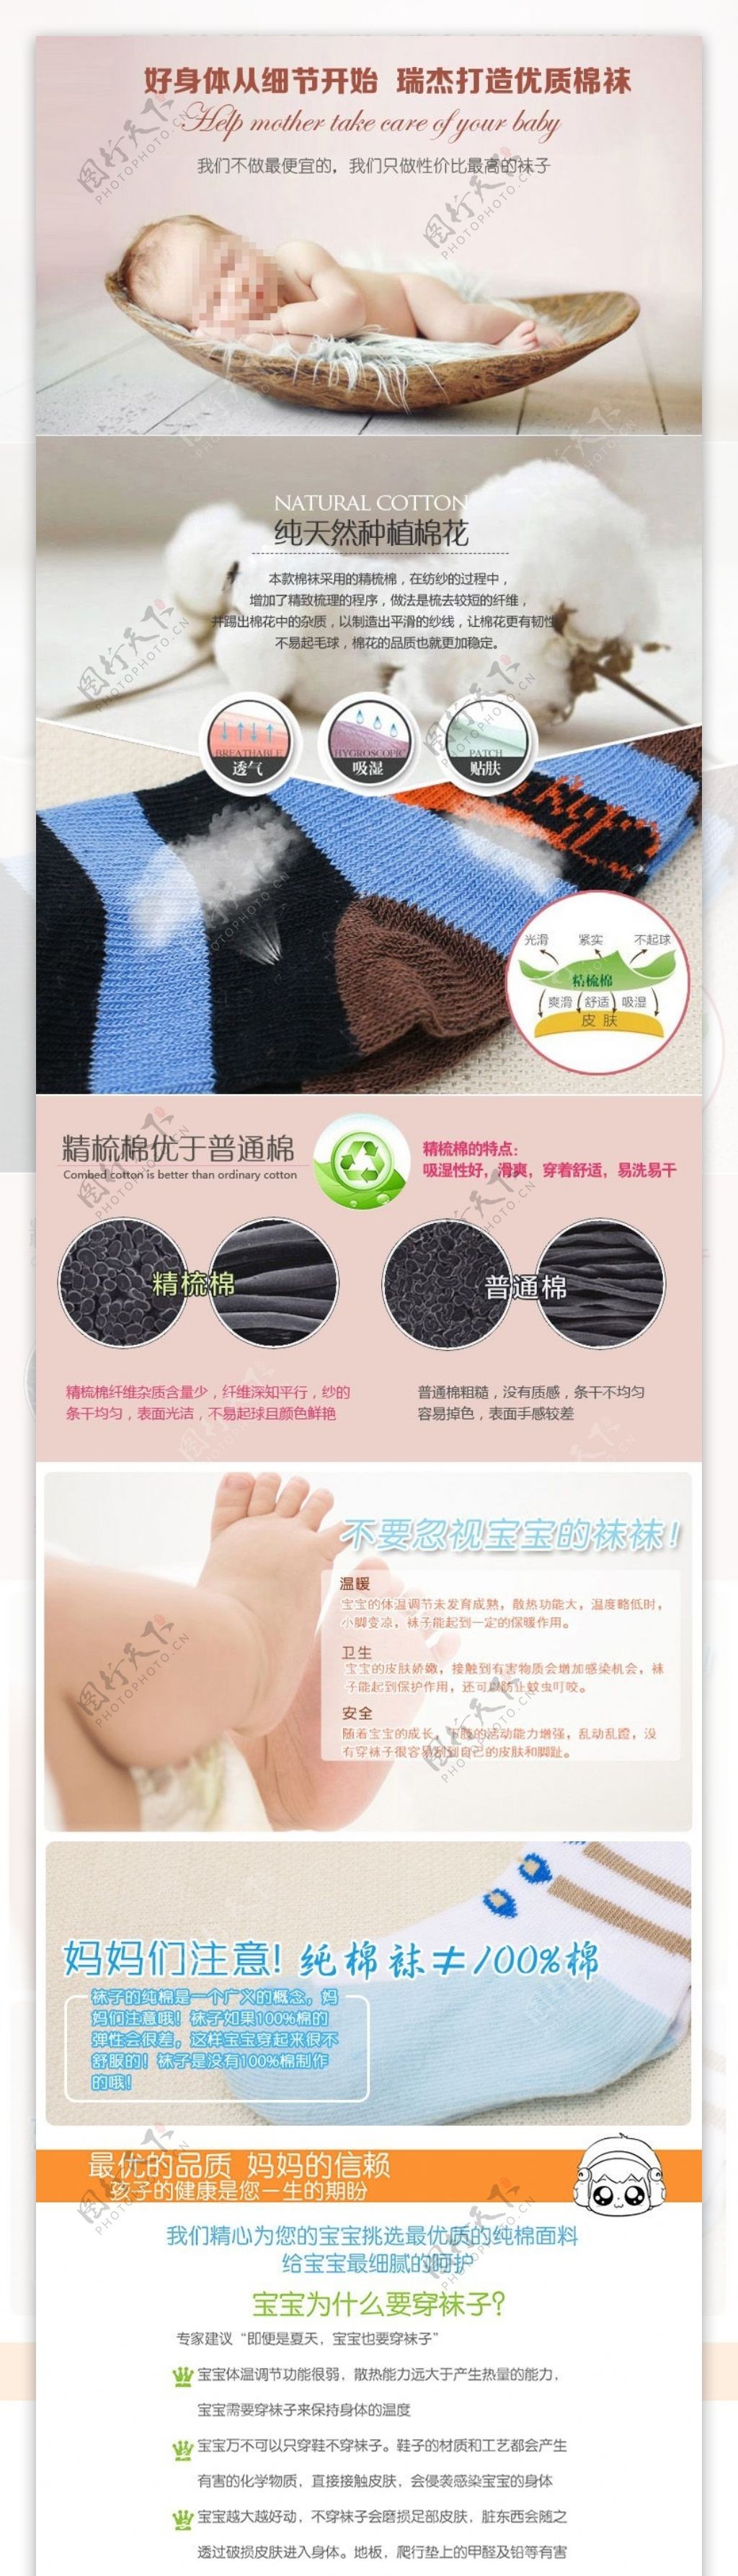 淘宝袜子详情页婴儿袜信息描述也